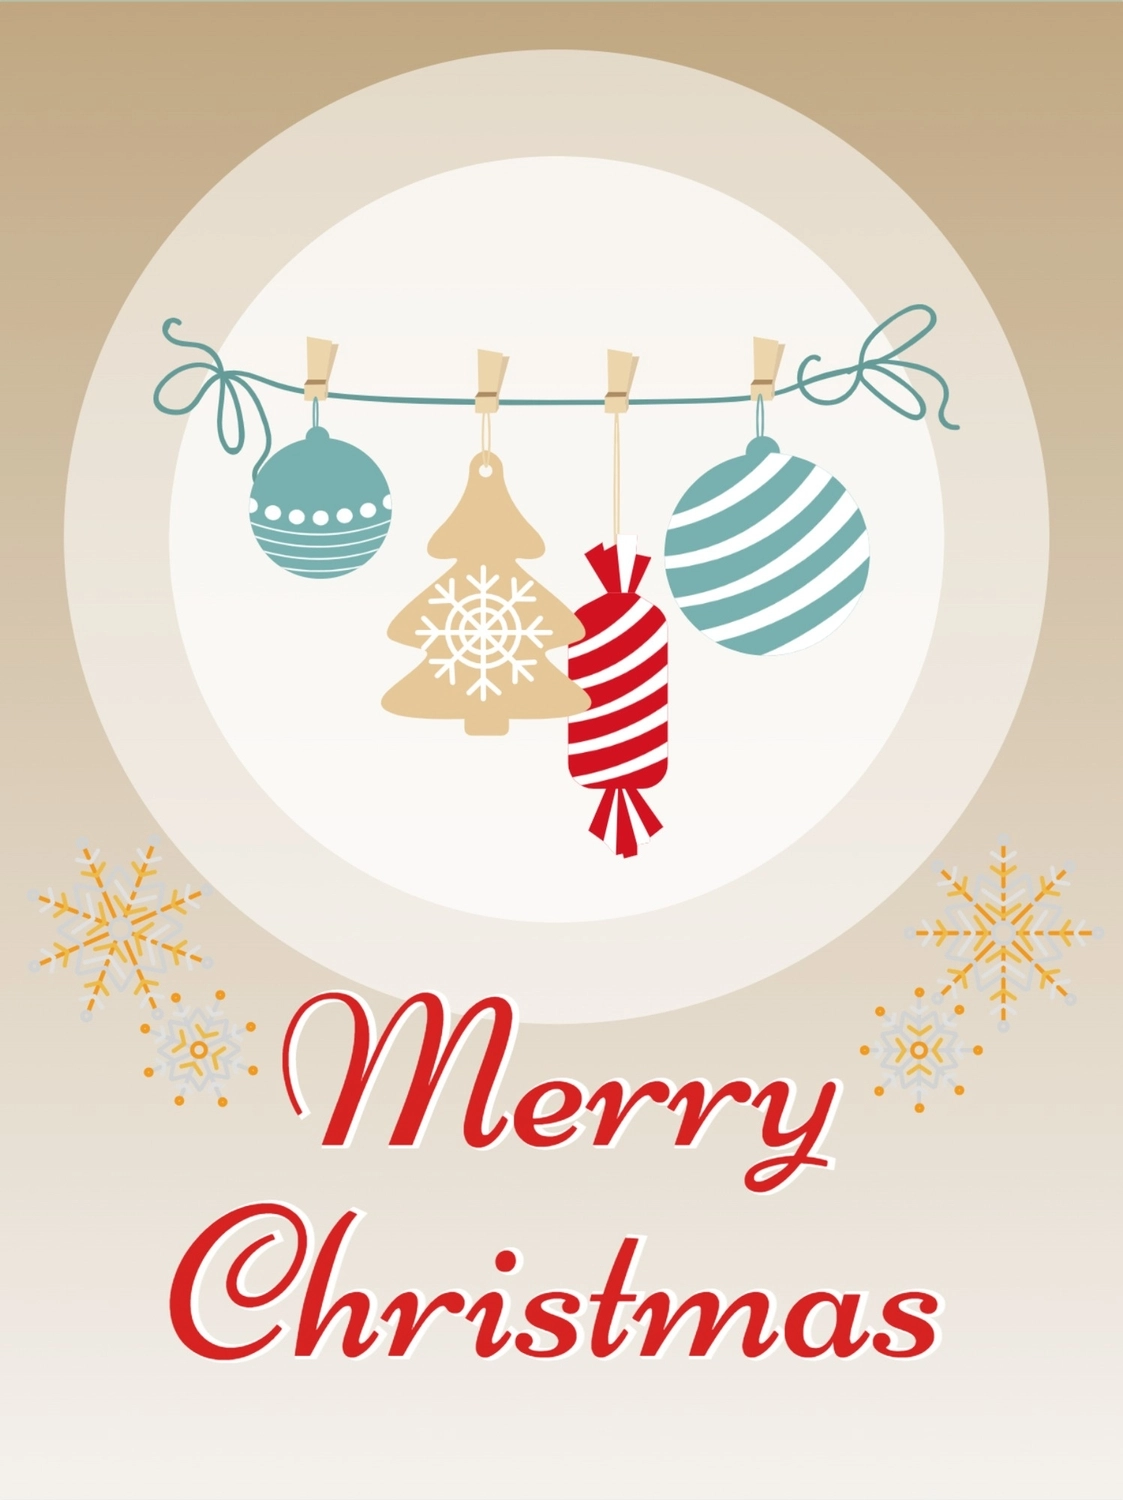 クリスマスの飾り, 矩形, クリスマスカード, ノルディック, グリーティングカードテンプレート